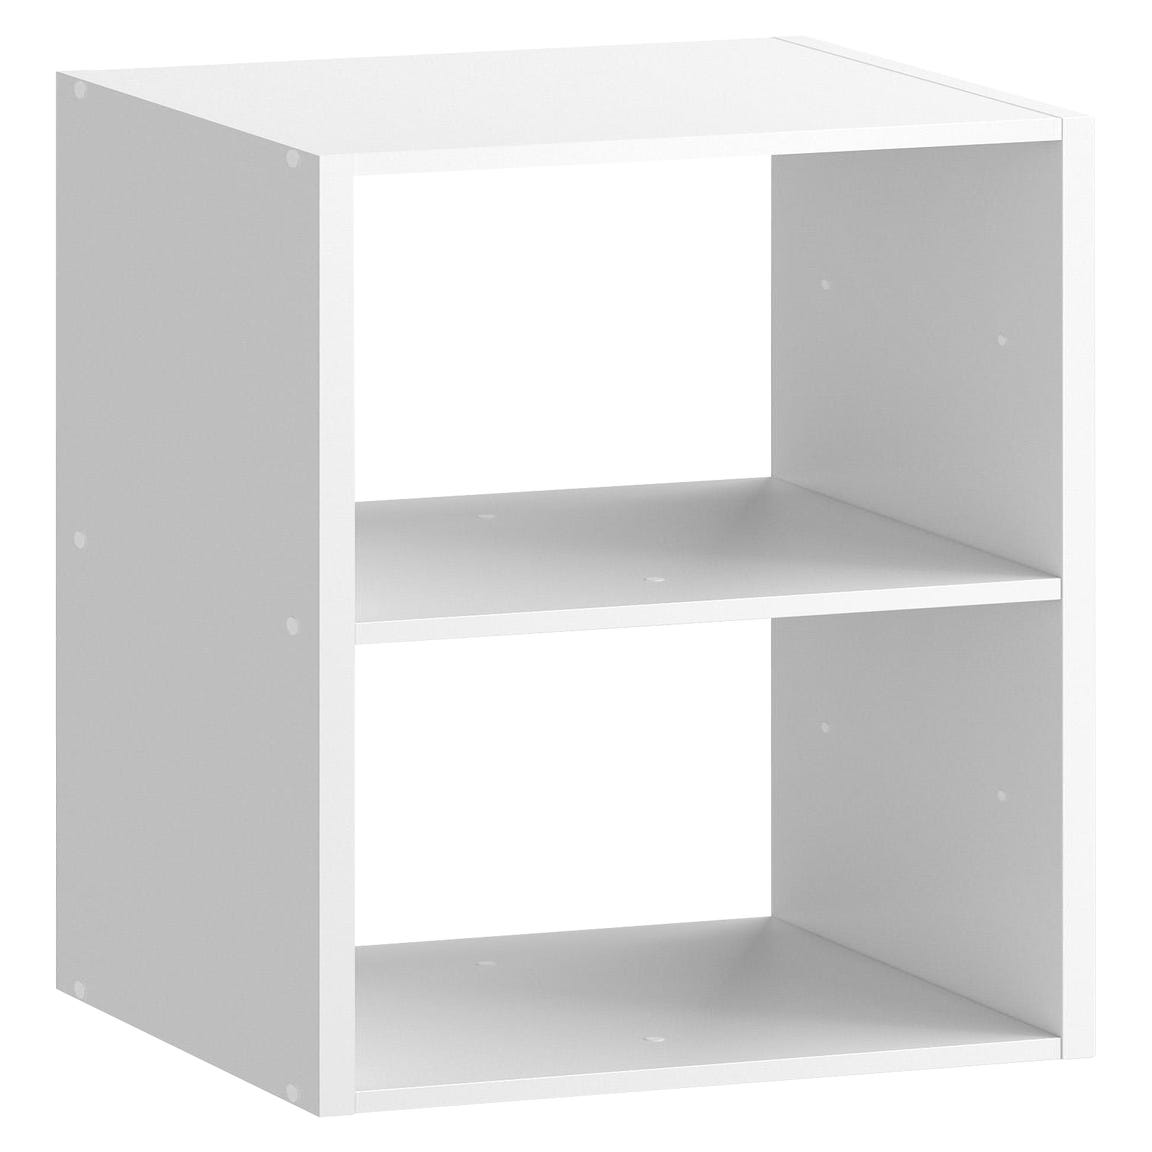 Estantería de 14 cubos para espacios pequeños, color blanco